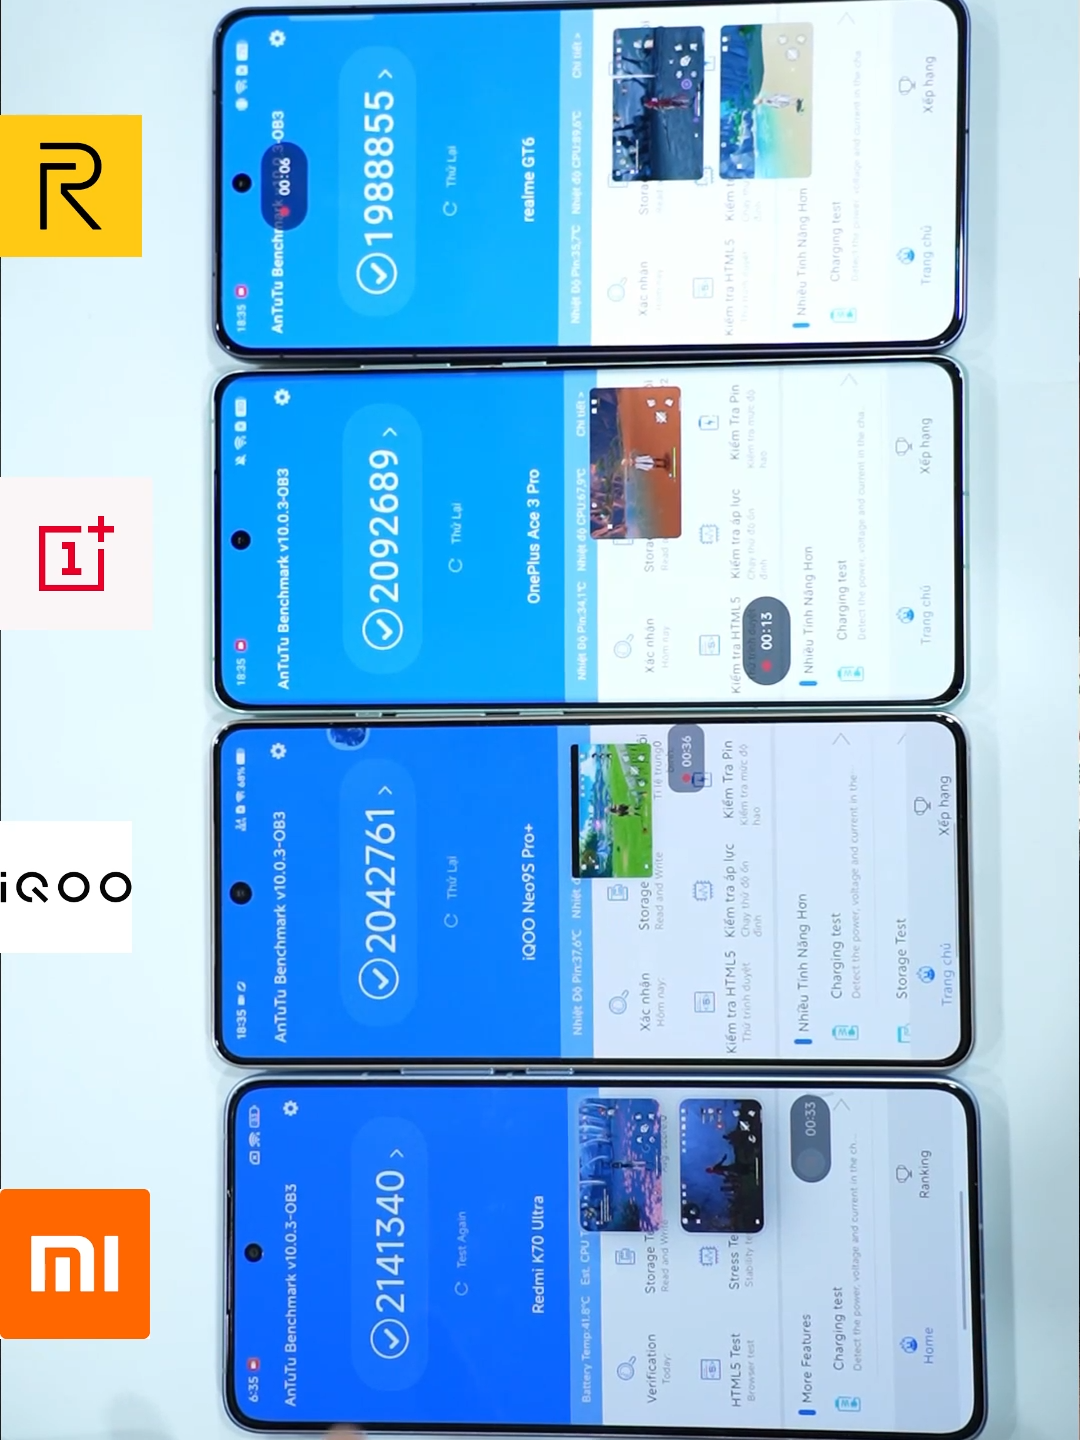 So sánh hiệu năng flagship các hãng điện thoại!! #android #papcongnghe #xuhuong